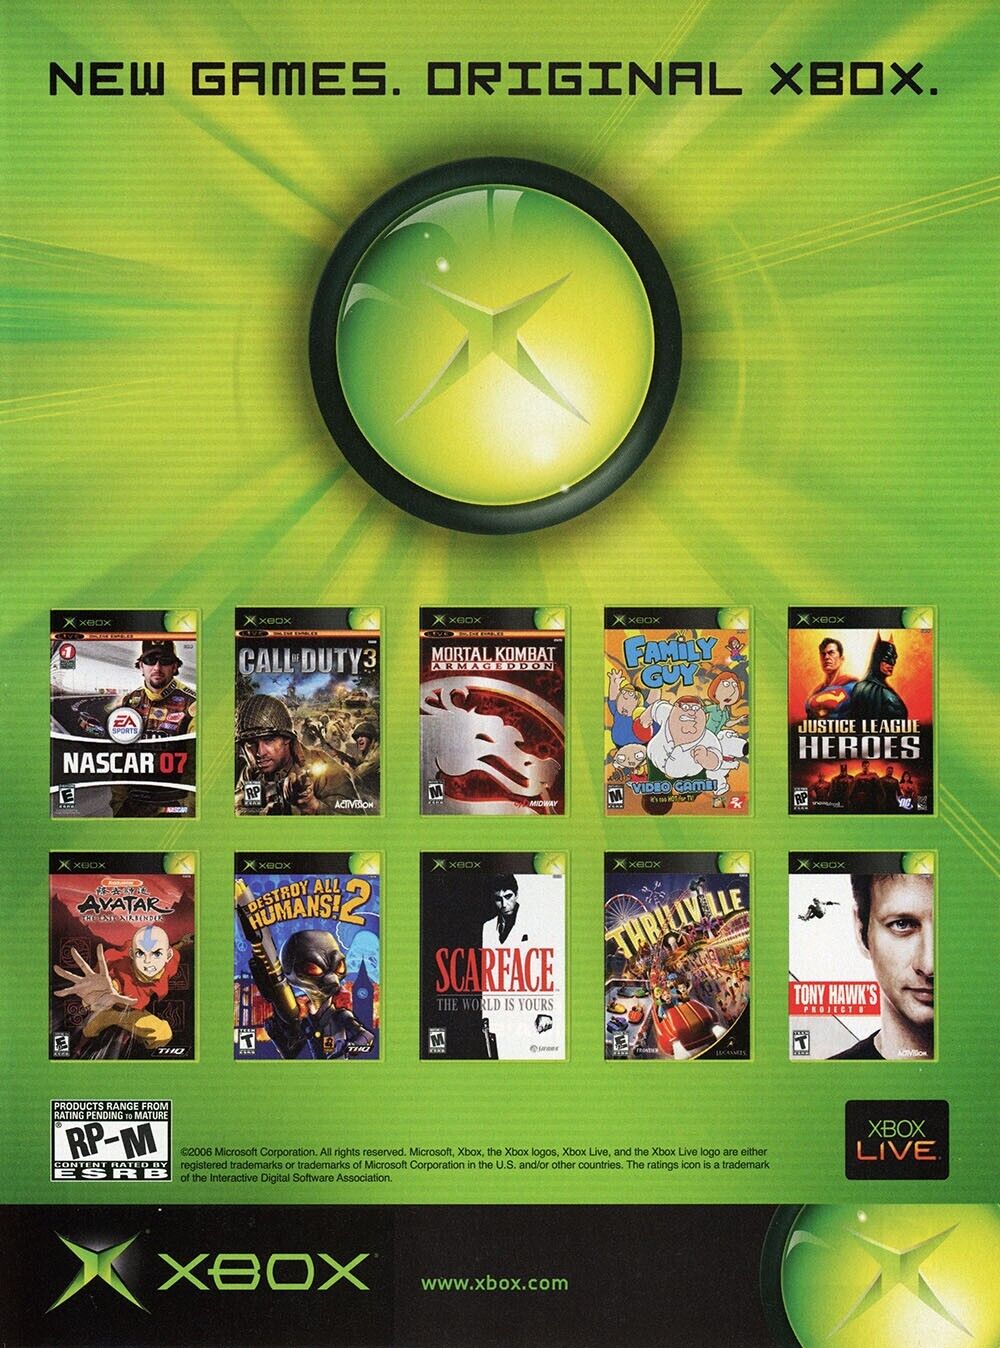 Microsoft Xbox Original 2007 Ad Authentic Microsoft Game Console Promo